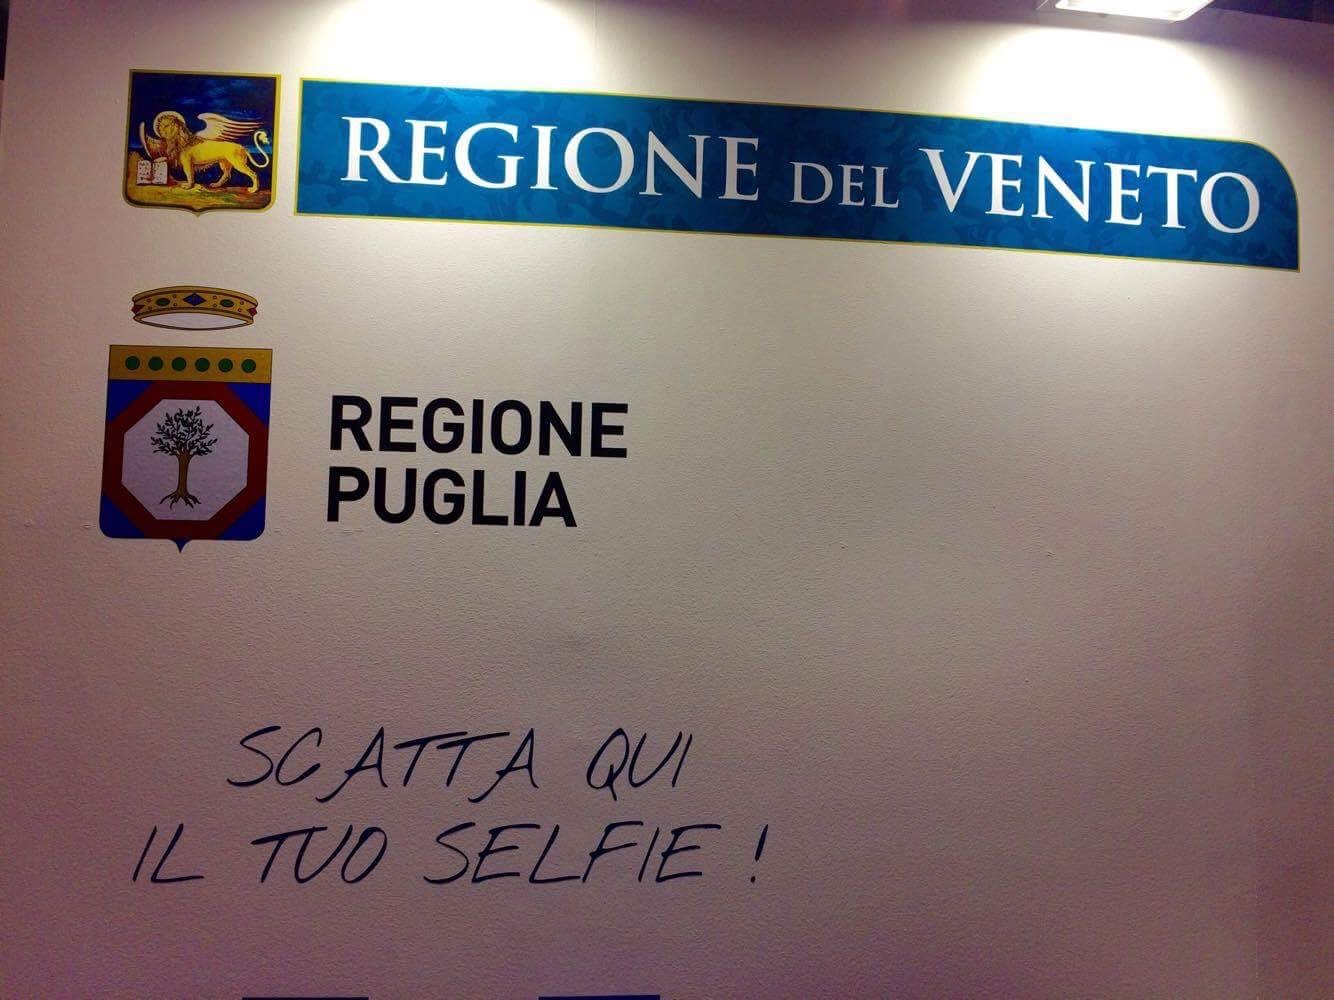 Lo stand di Regione Puglia e Regione del Veneto alla fiera "Job&Orienta"